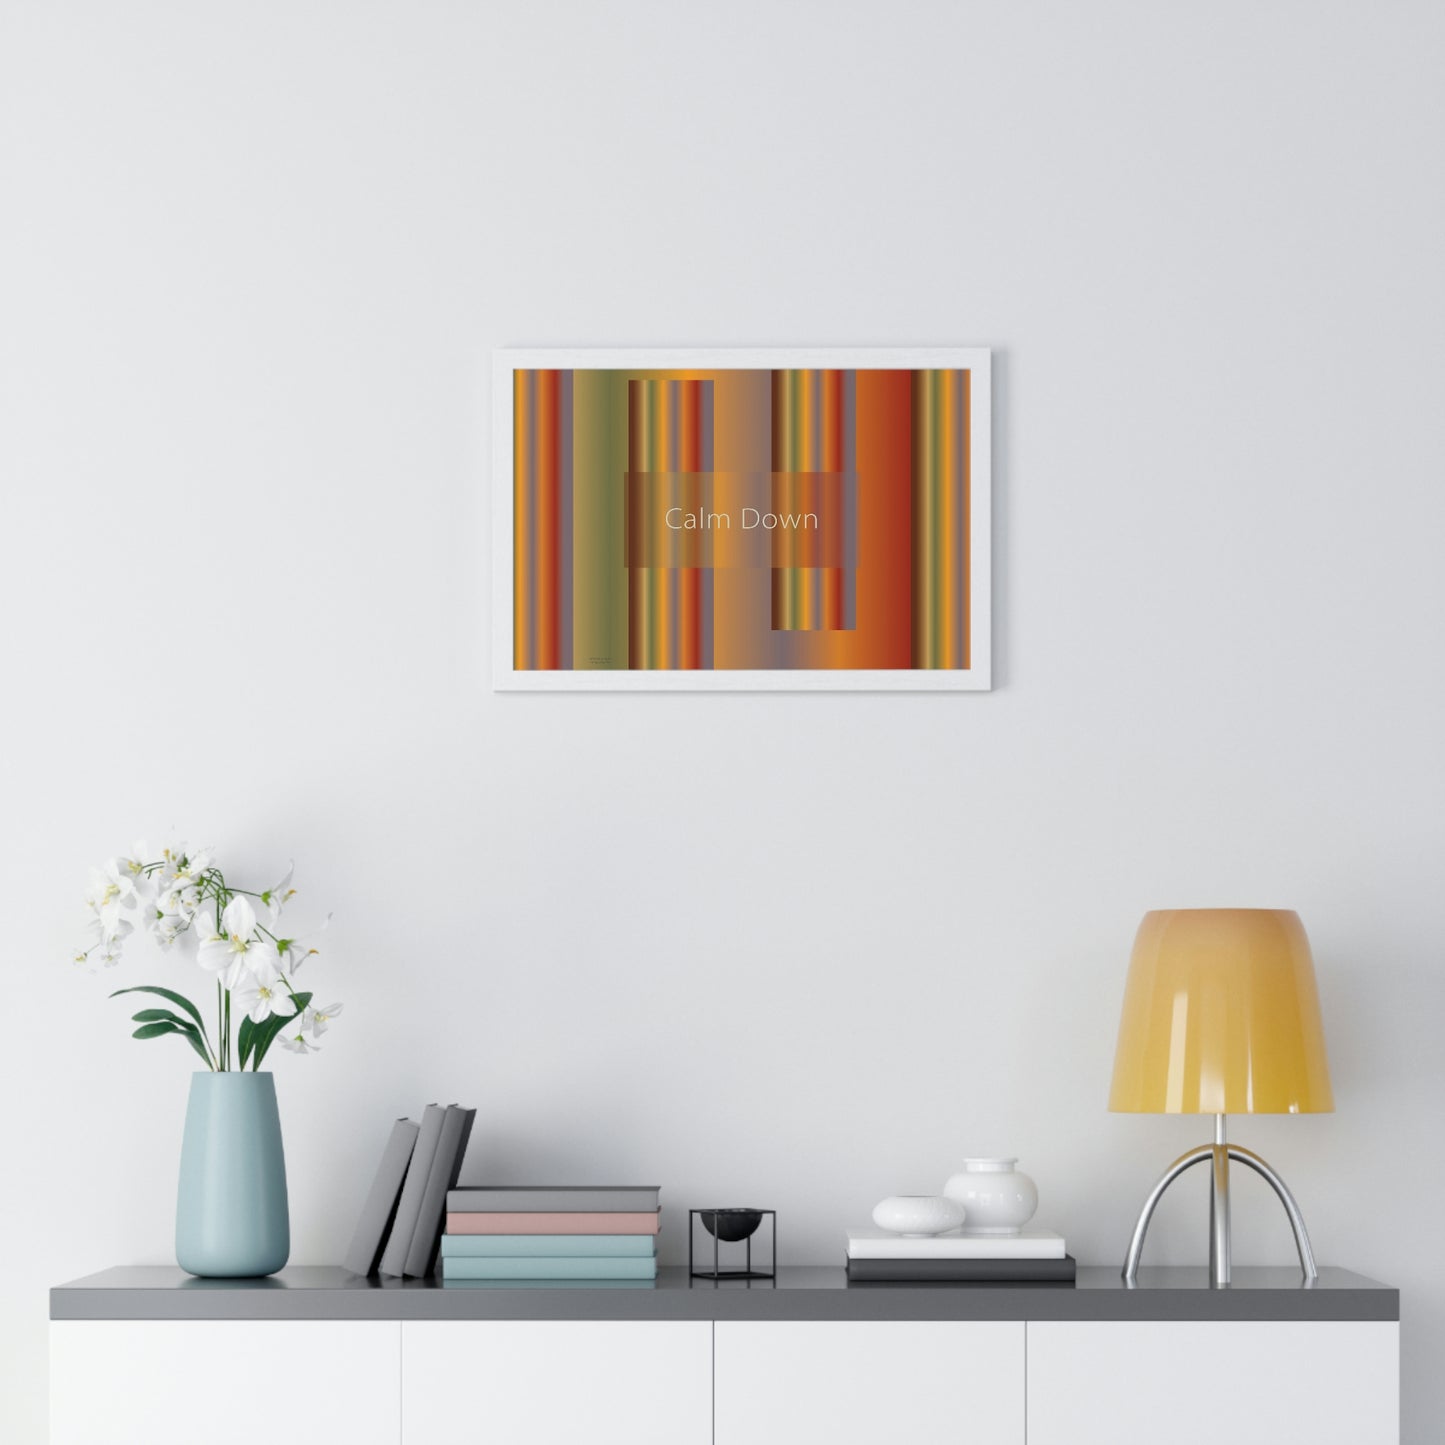 Premium Framed Horizontal Poster, 18“ × 12“ Calm Down - Design No.1700